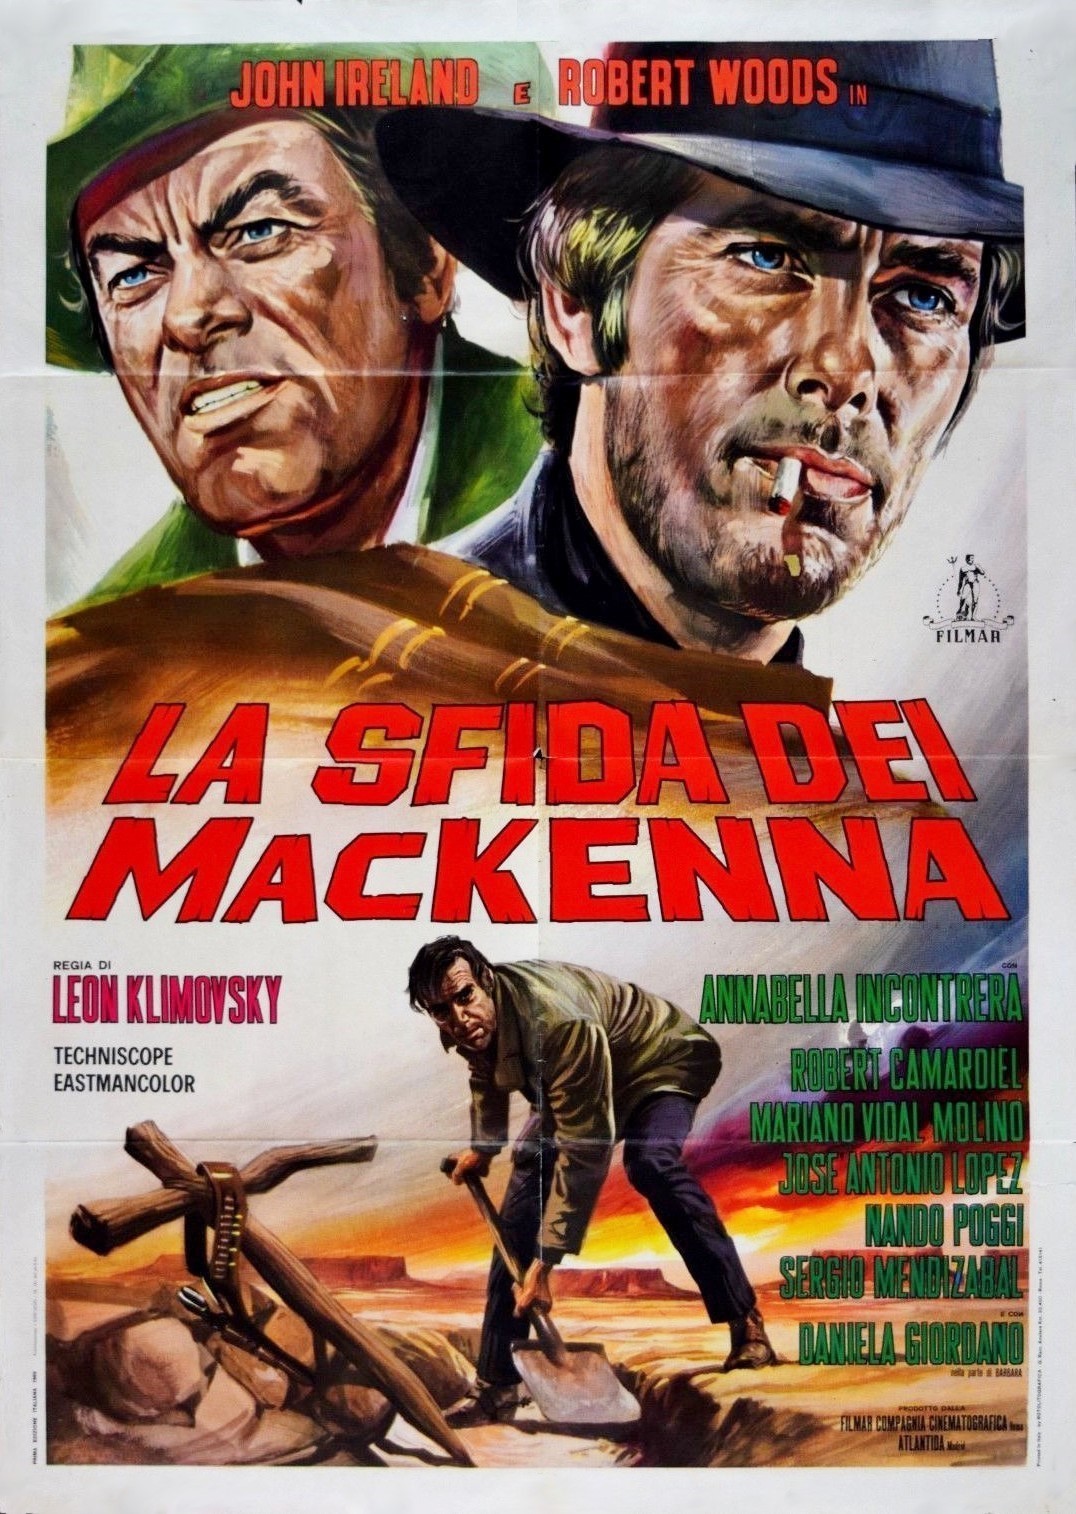 Challenge of the McKennas movie poster